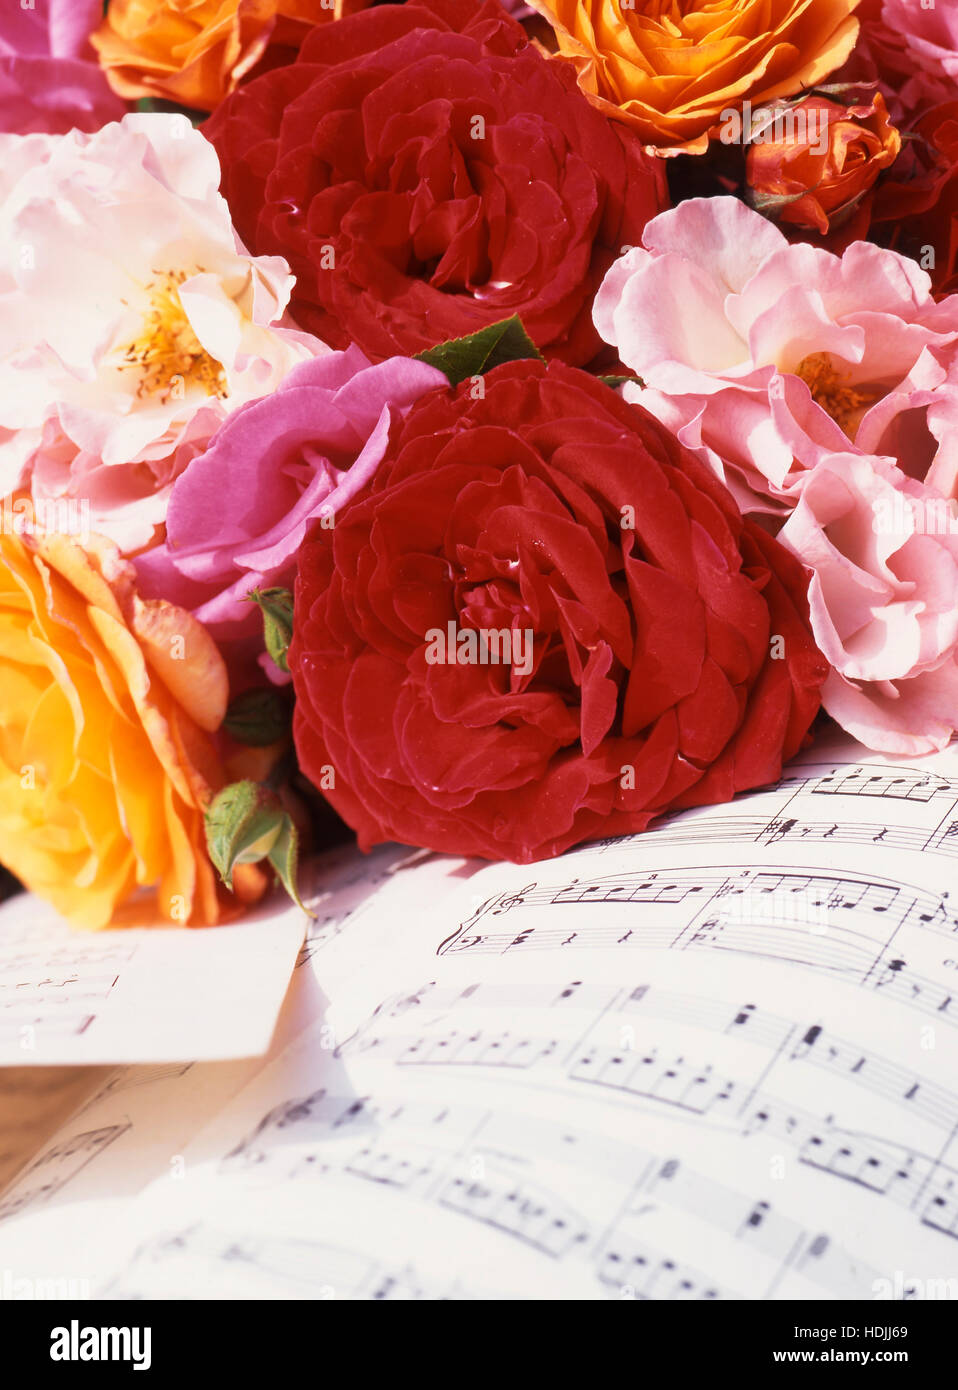 Giallo, bianco e arancione, rosa e rose rosse sulla pagina musica Foto Stock